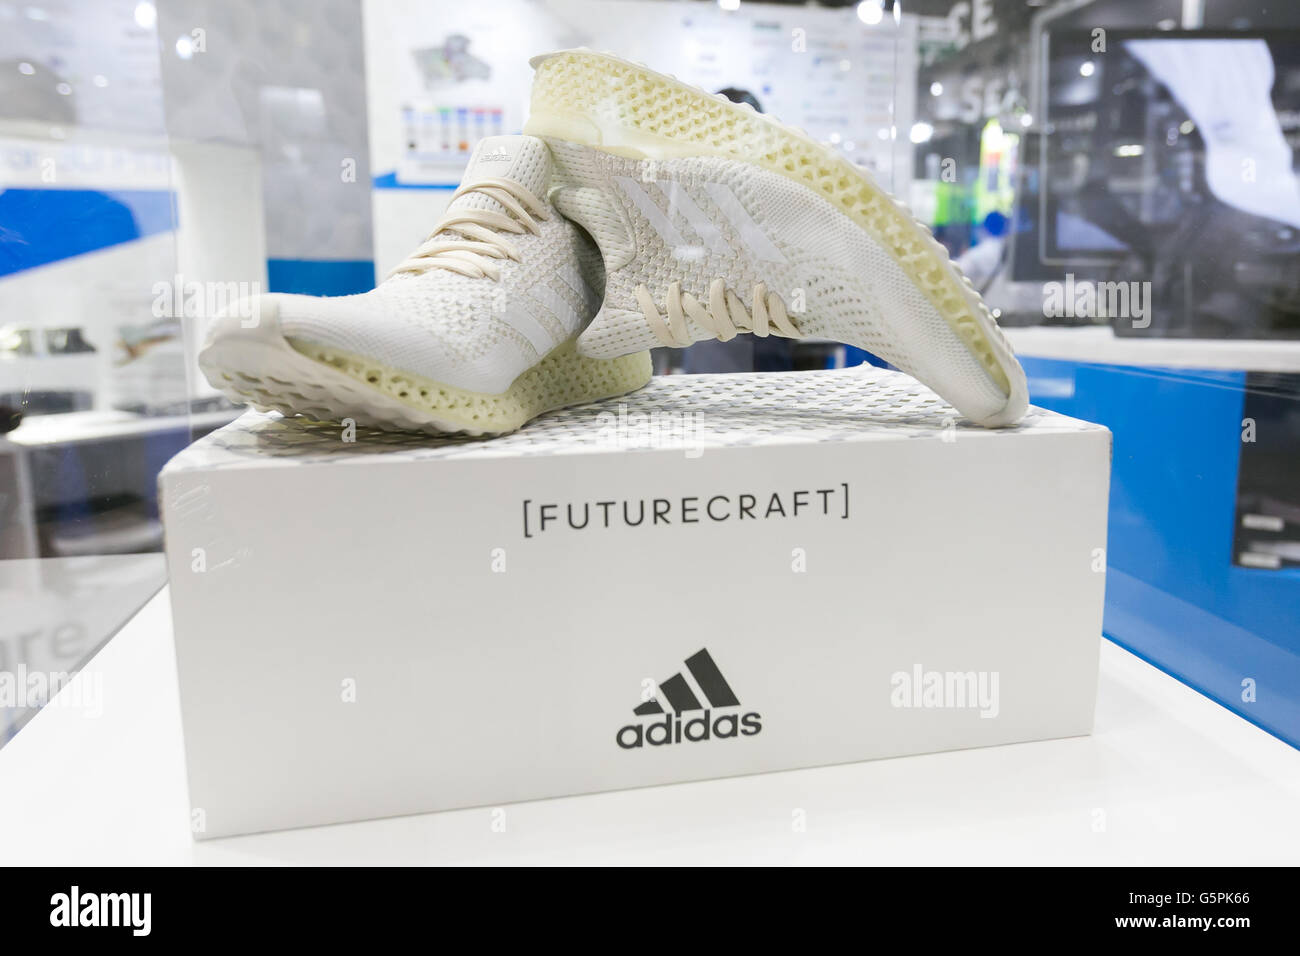 Tokio, Japón. 23 de junio de 2016. Adidas 3D-impresos zapatillas  ''Futurecraft'' en la pantalla, en la 24ª 3D y realidad virtual Expo (IVR)  en Tokio Big Sight el 23 de junio de